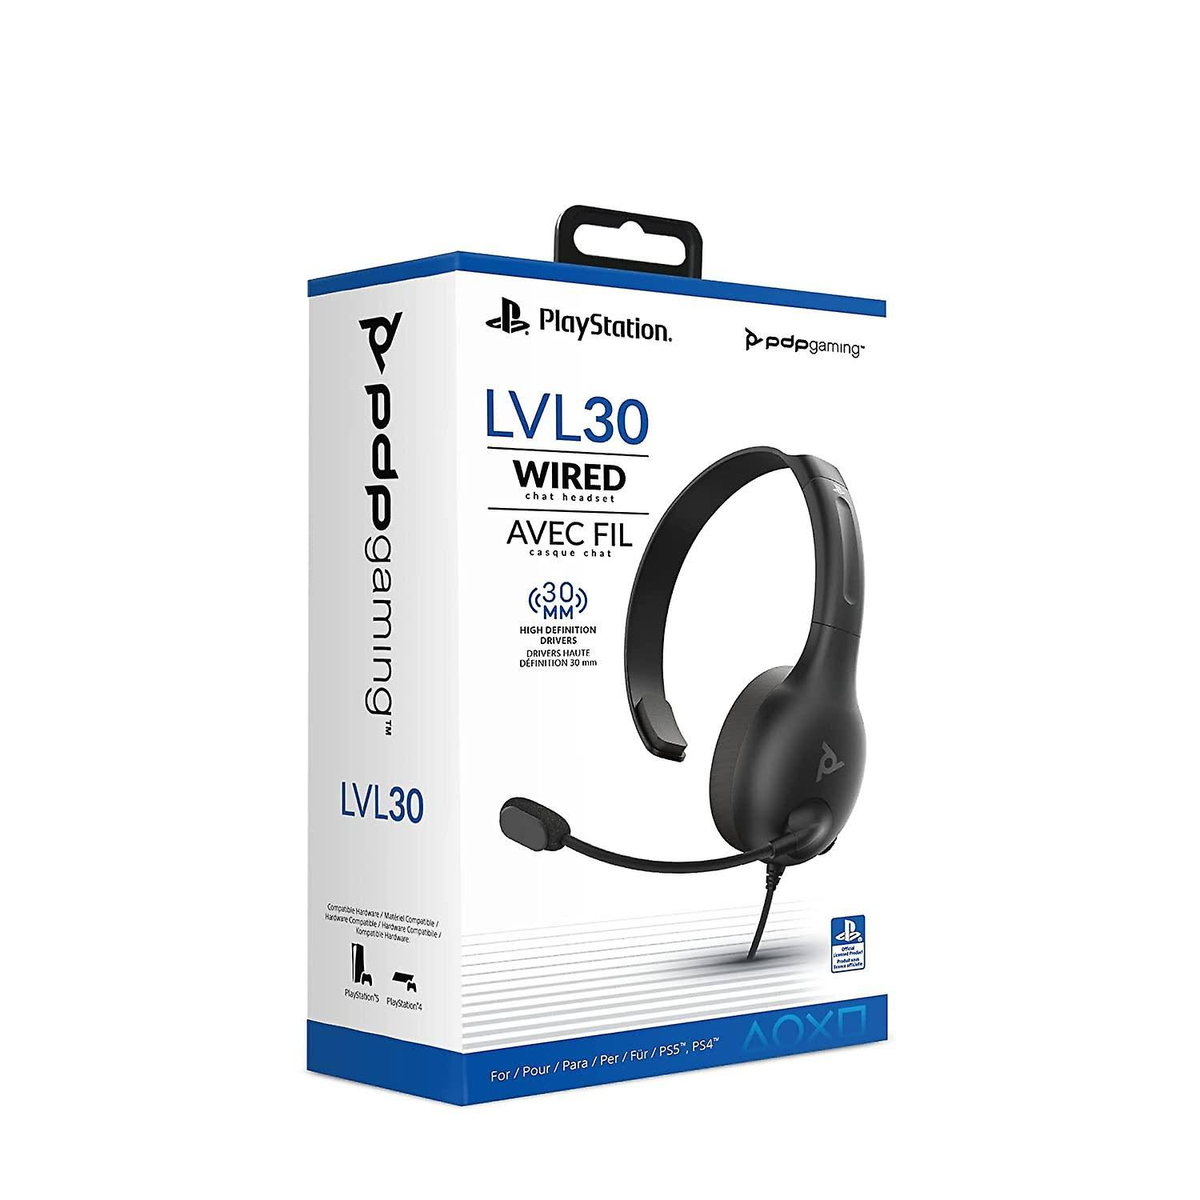 LVL30 PS4 Bluetooth SCHWARZ, F. Over-ear Headset PDP Schwarz 051-107-EU CHAT